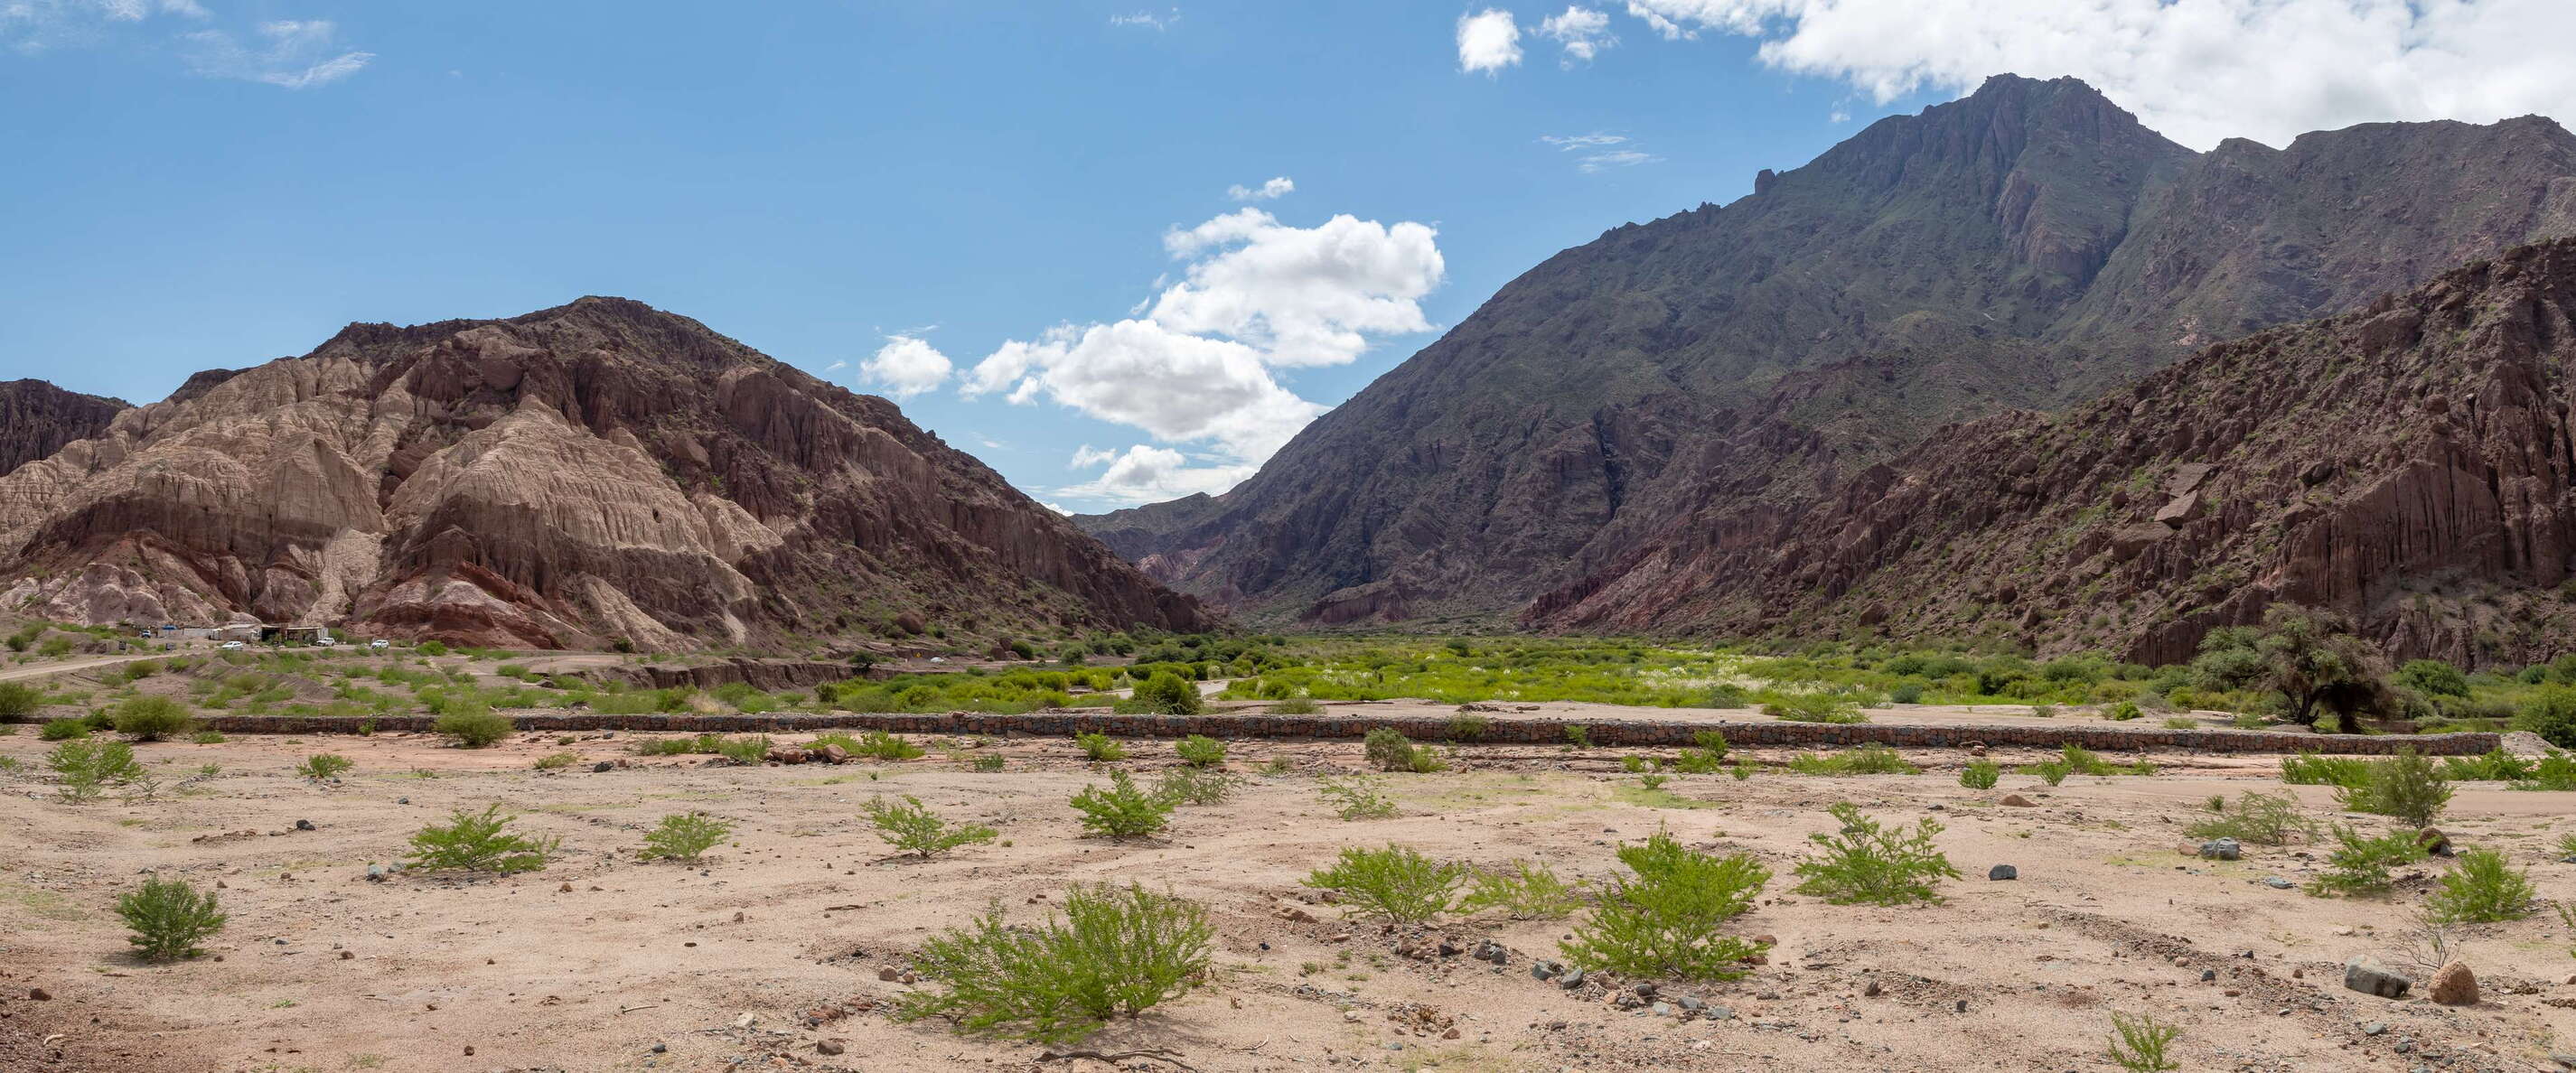 Quebrada de Las Conchas | El Paso landslides